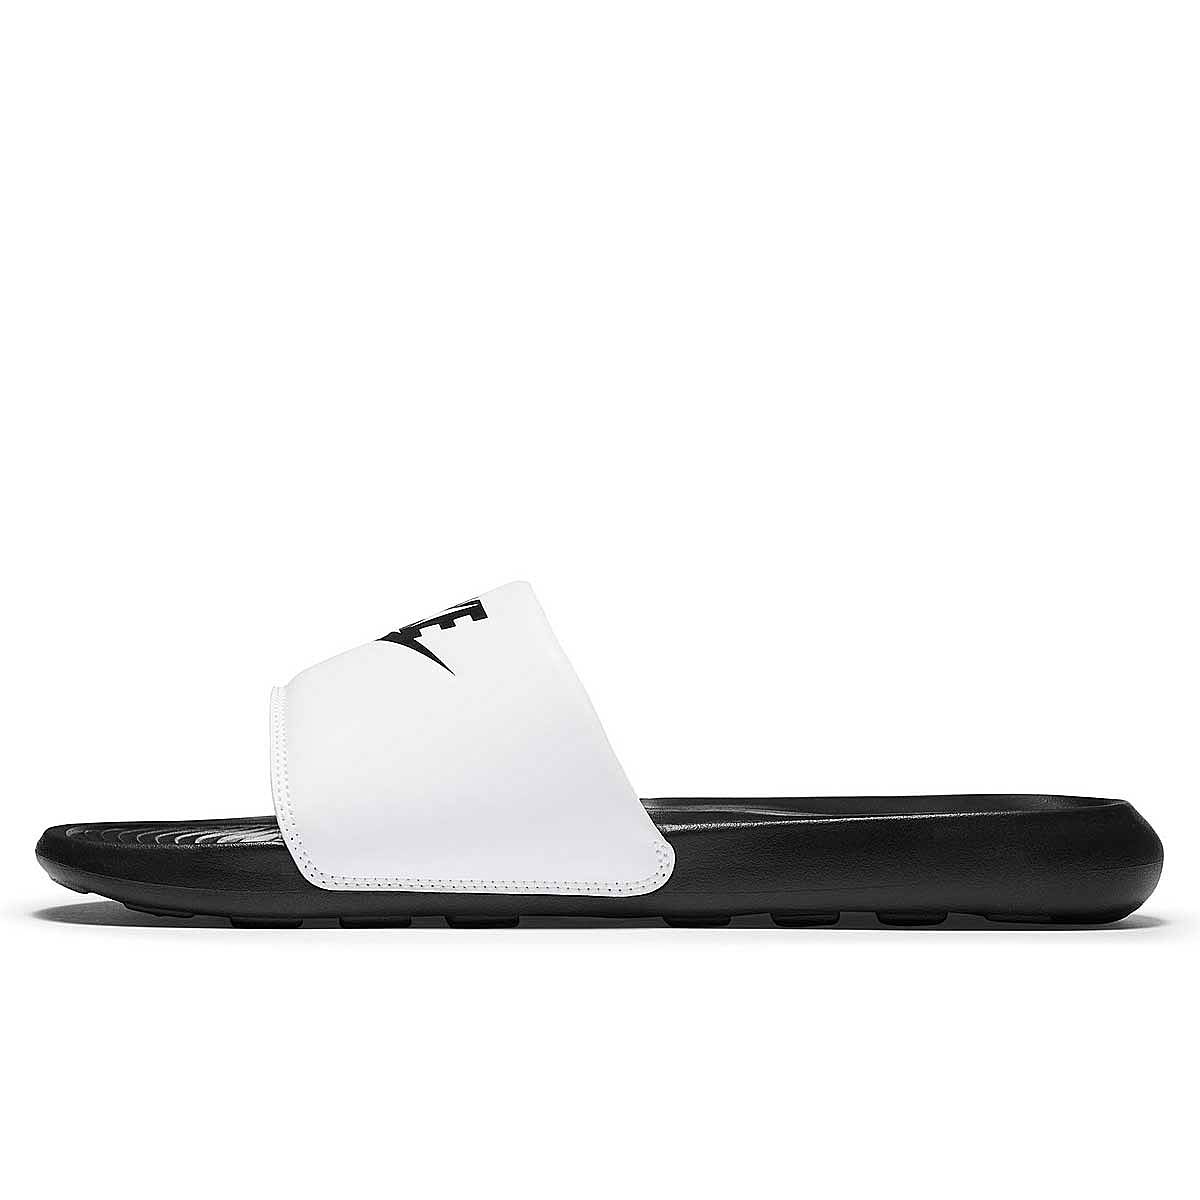 Nike Victori One Slide, Schwarz/schwarz-weiß EU47 1/2